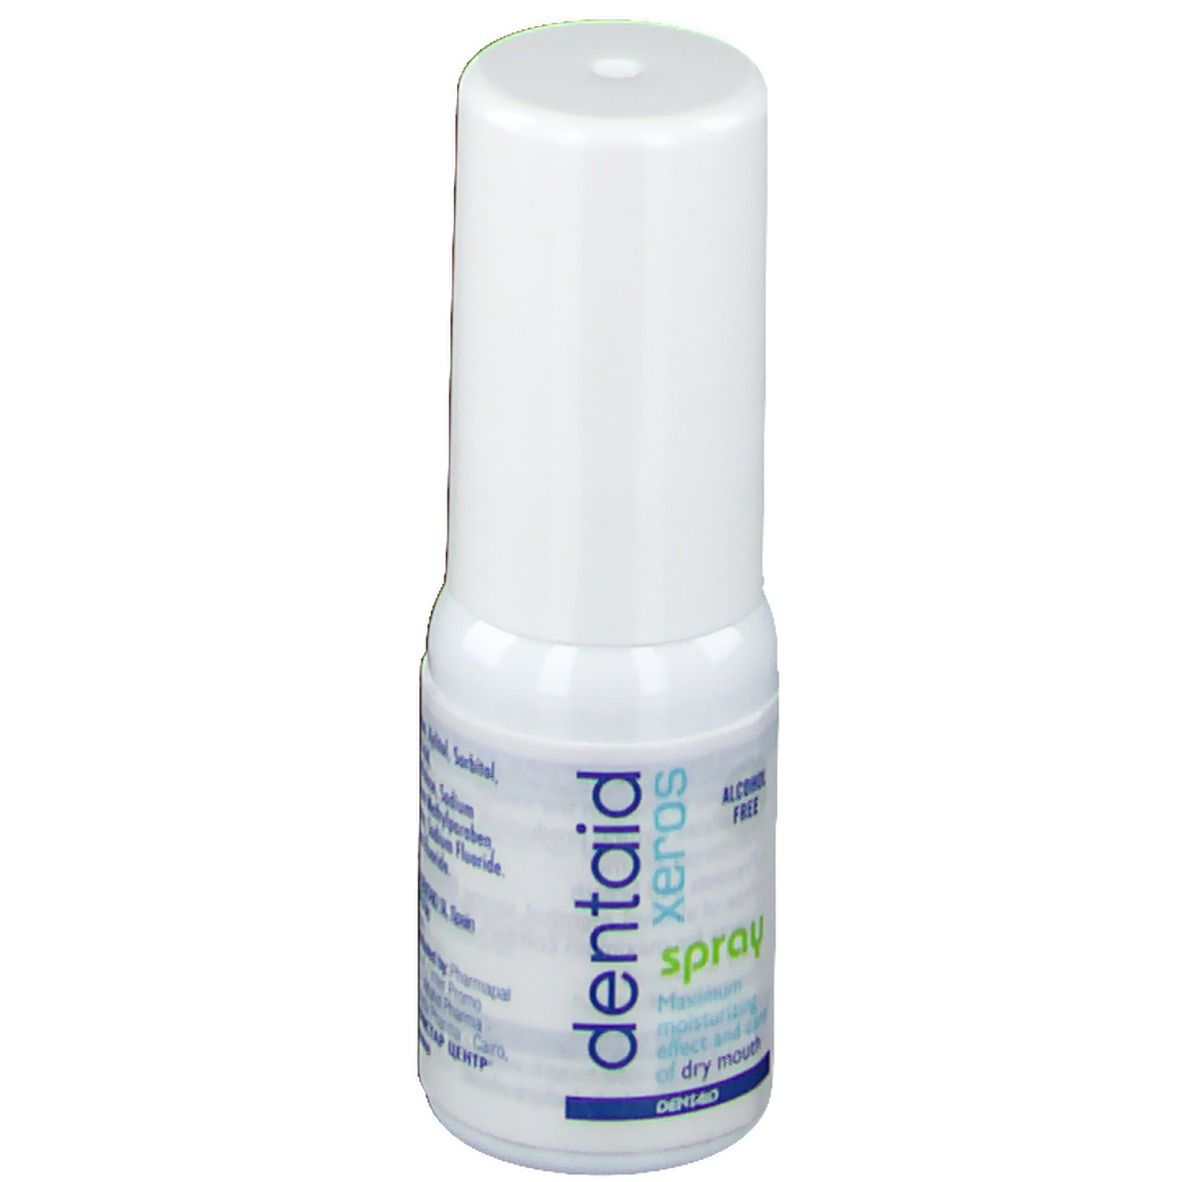 dentaid® xeros Feuchtigkeits-Spray